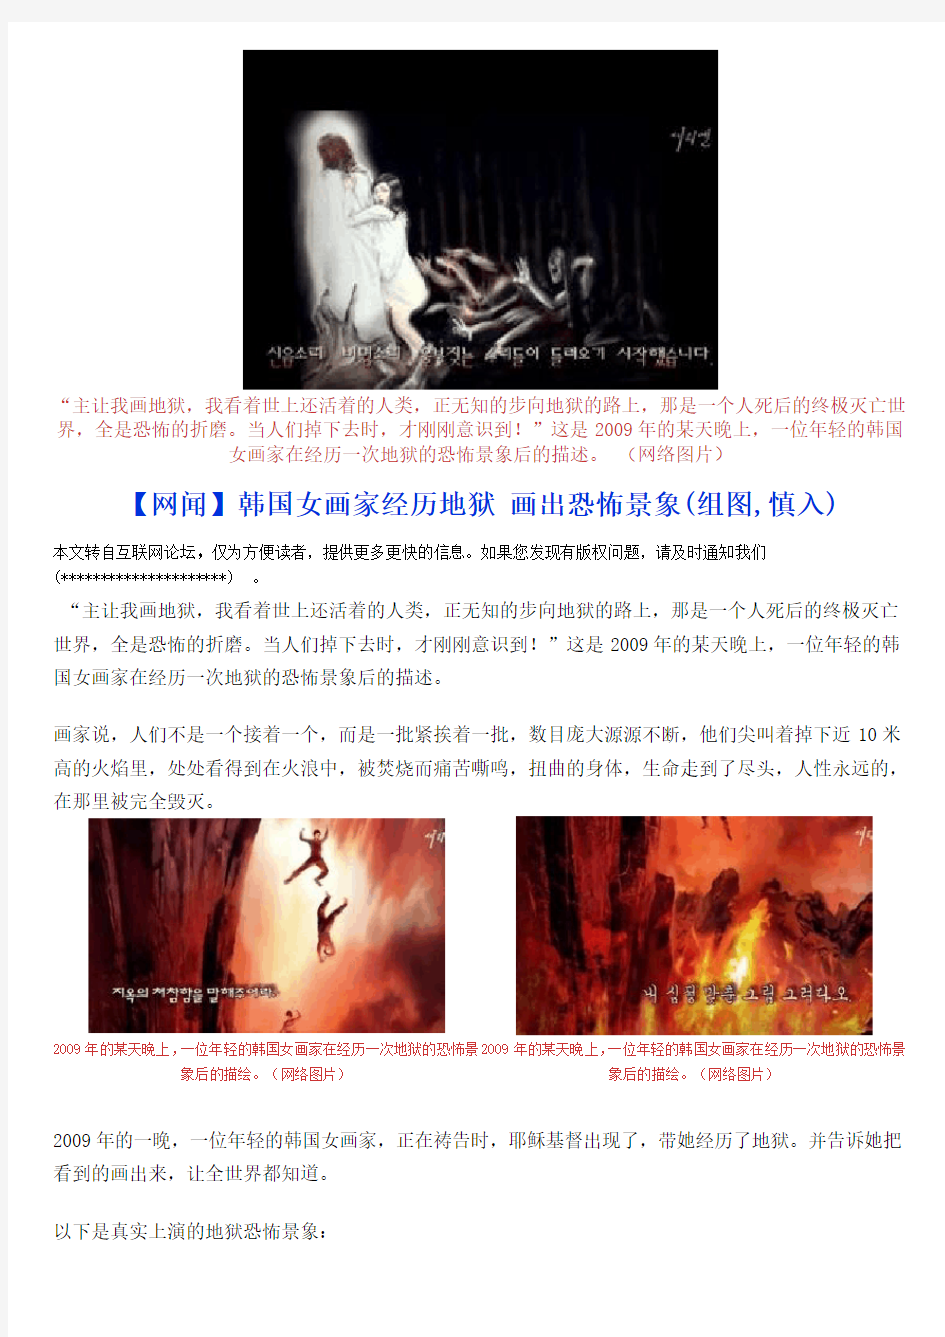 韩国女画家经历地狱 画出恐怖景象(组图,慎入)